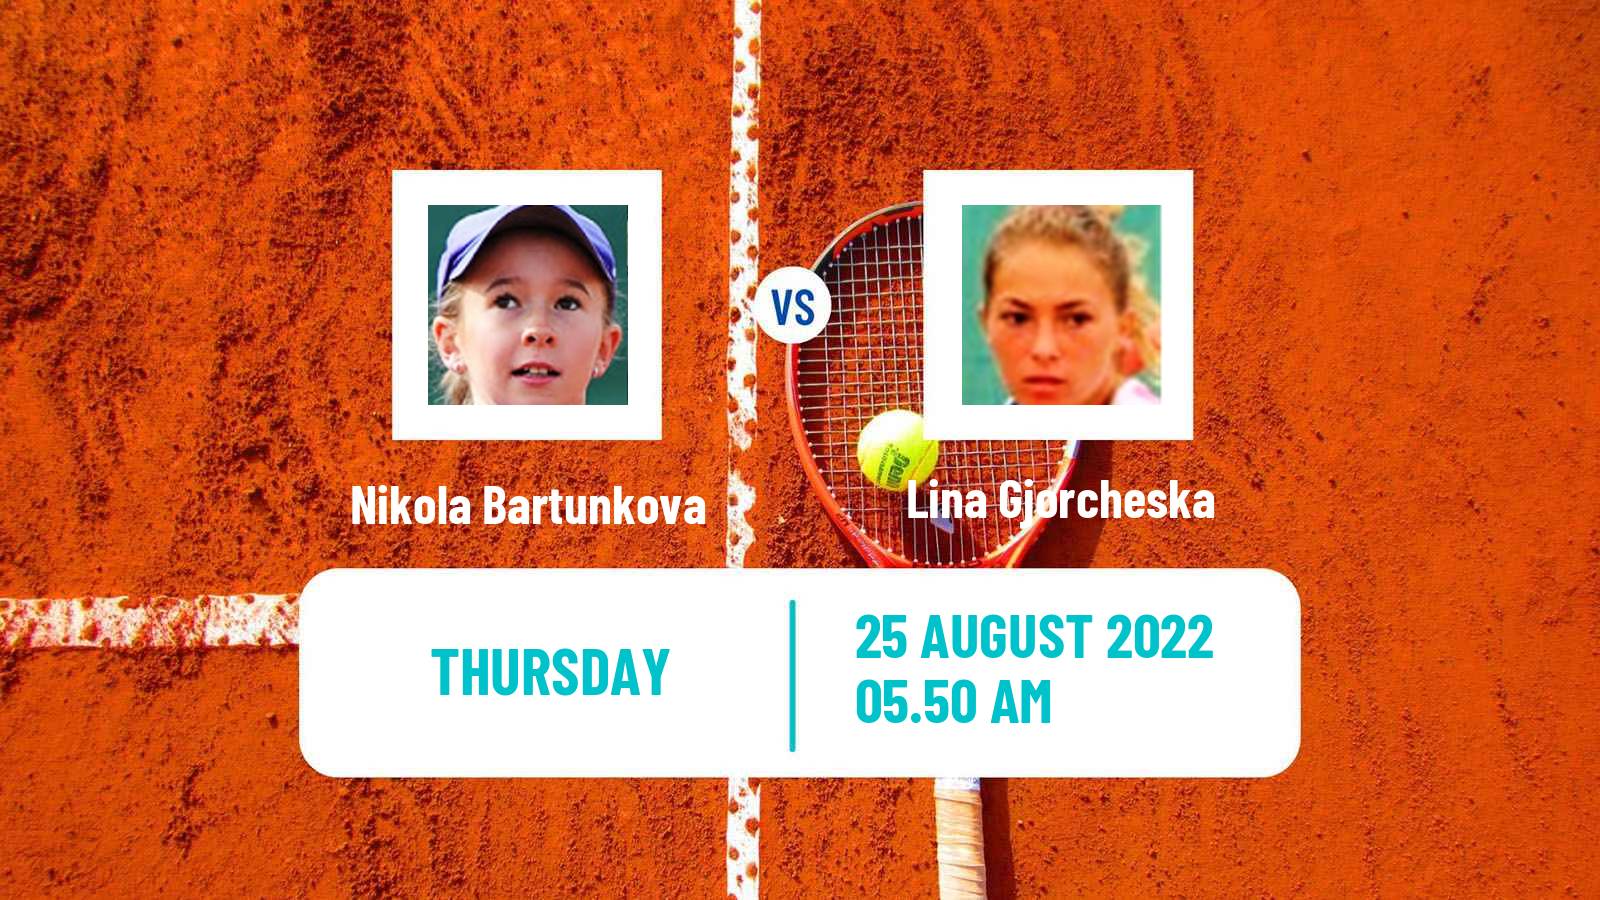 Tennis ITF Tournaments Nikola Bartunkova - Lina Gjorcheska